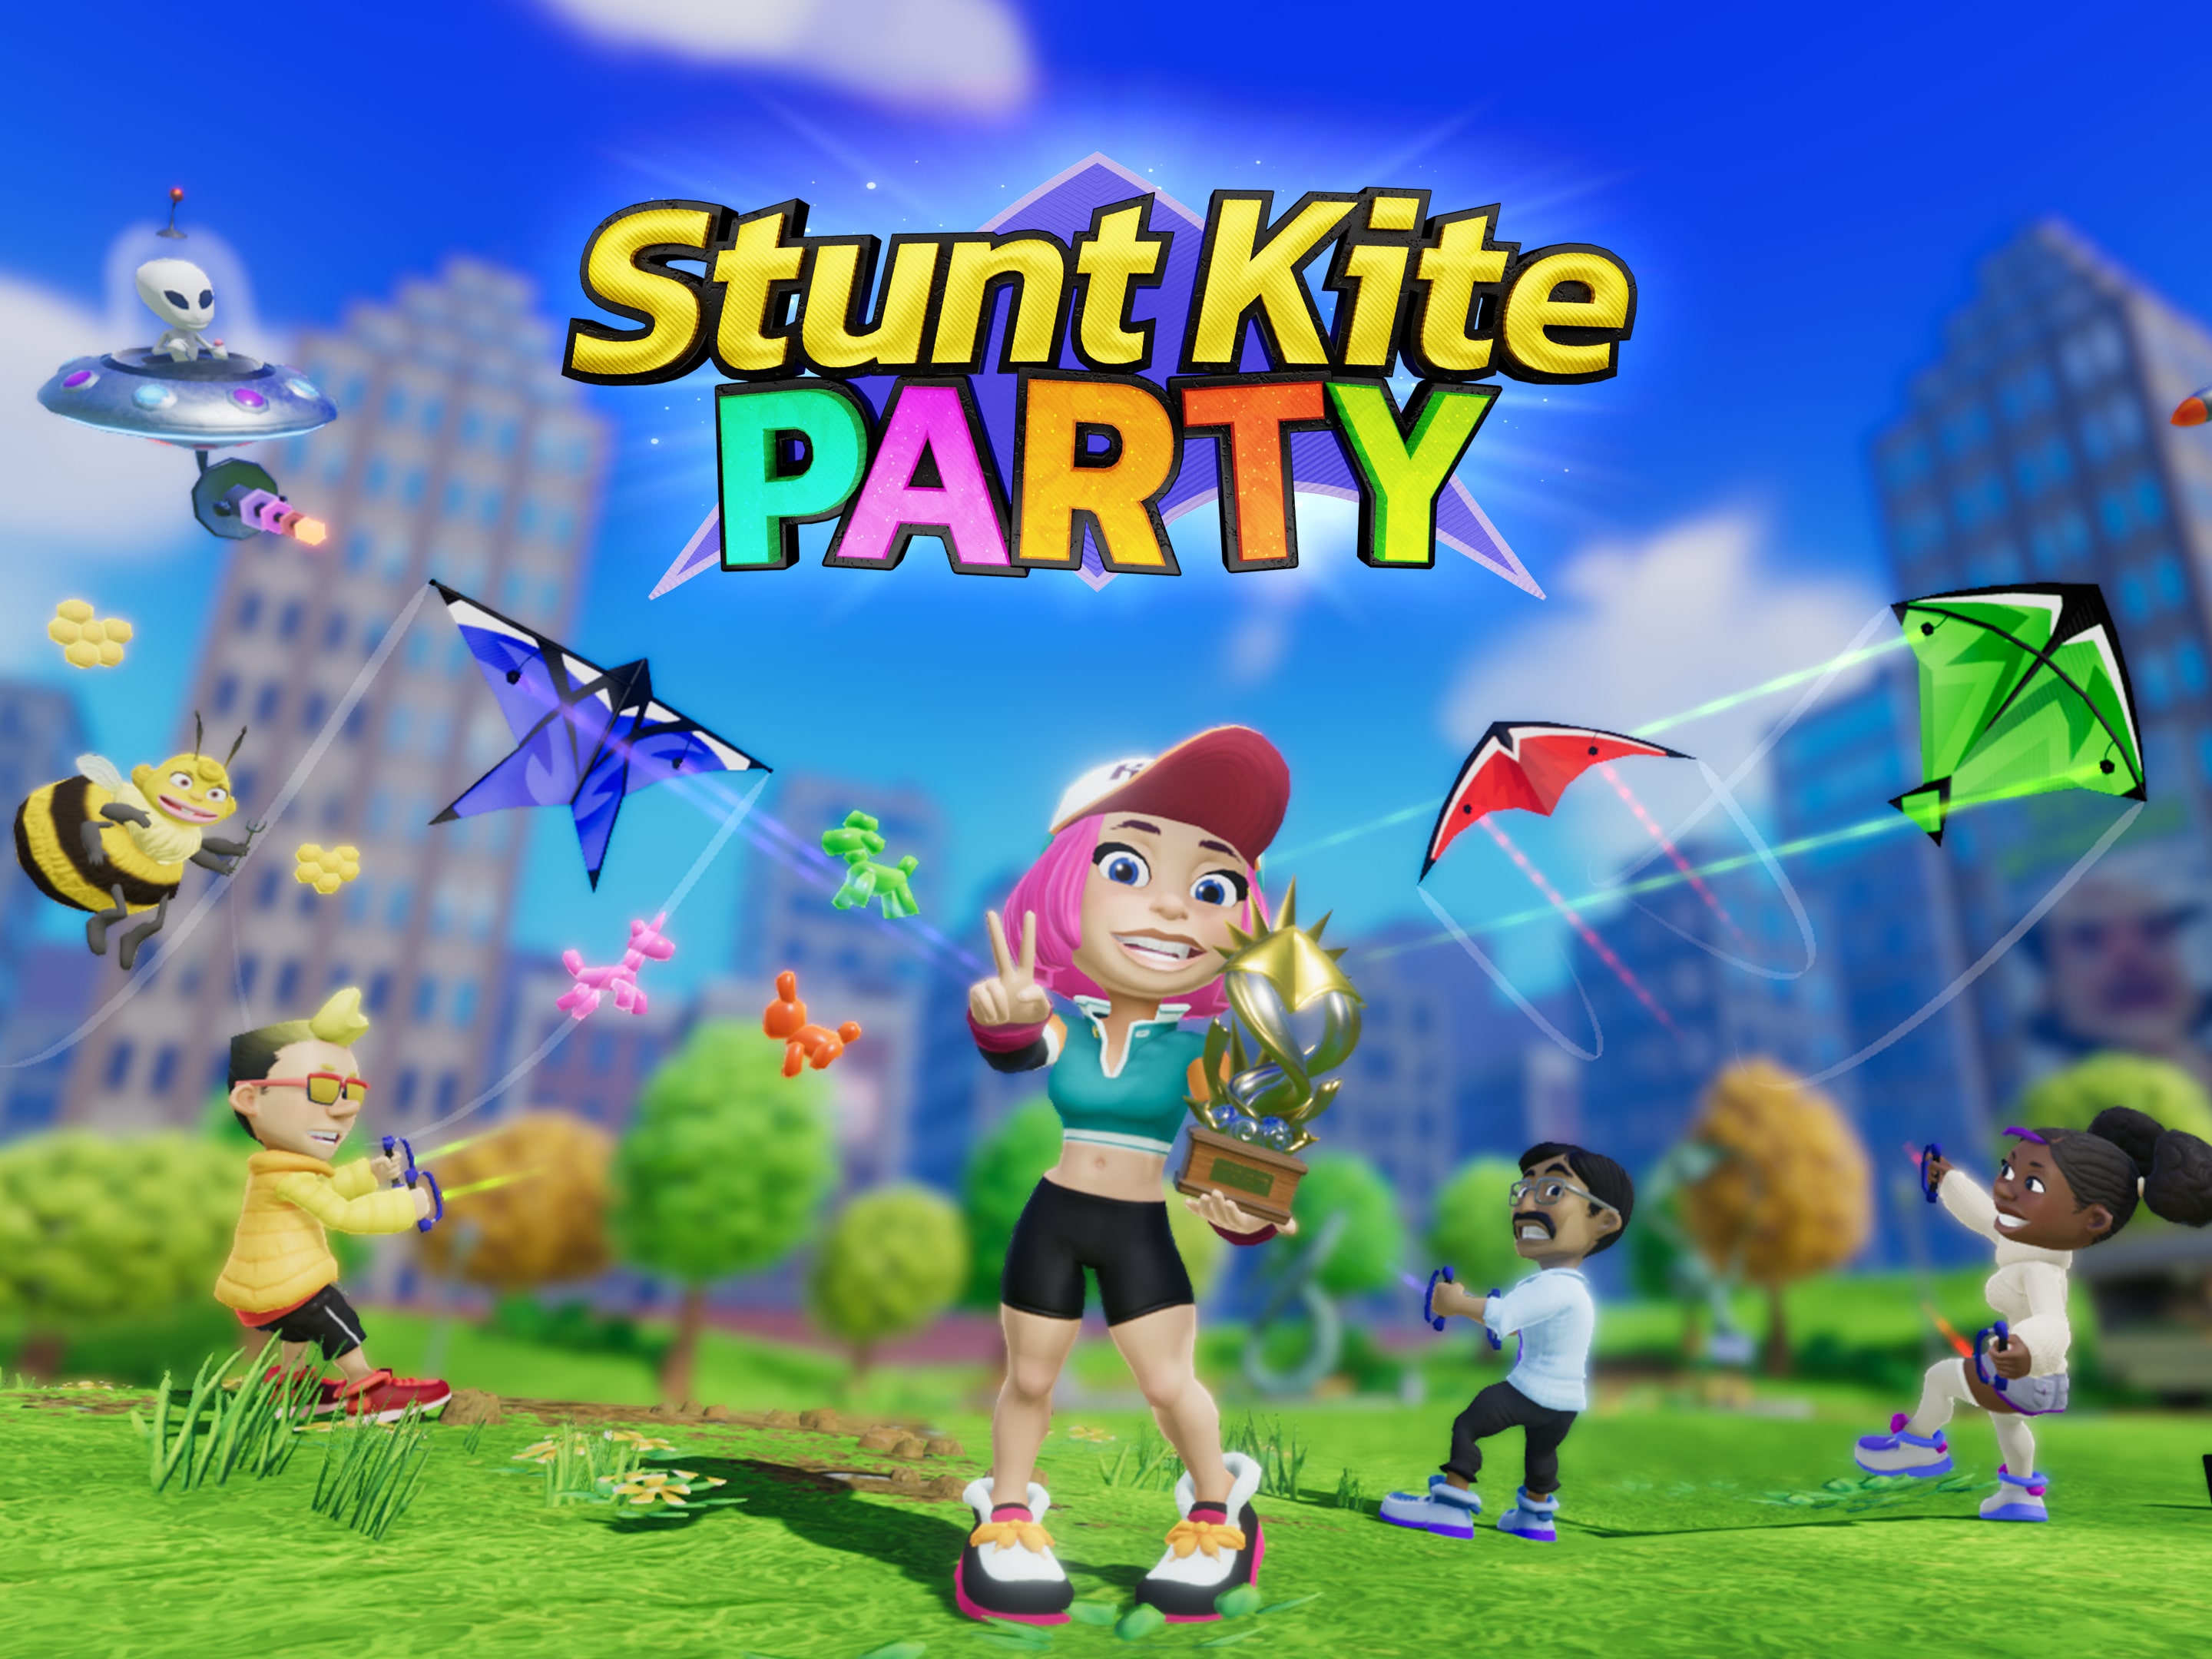 Buy Stunt Kite Party